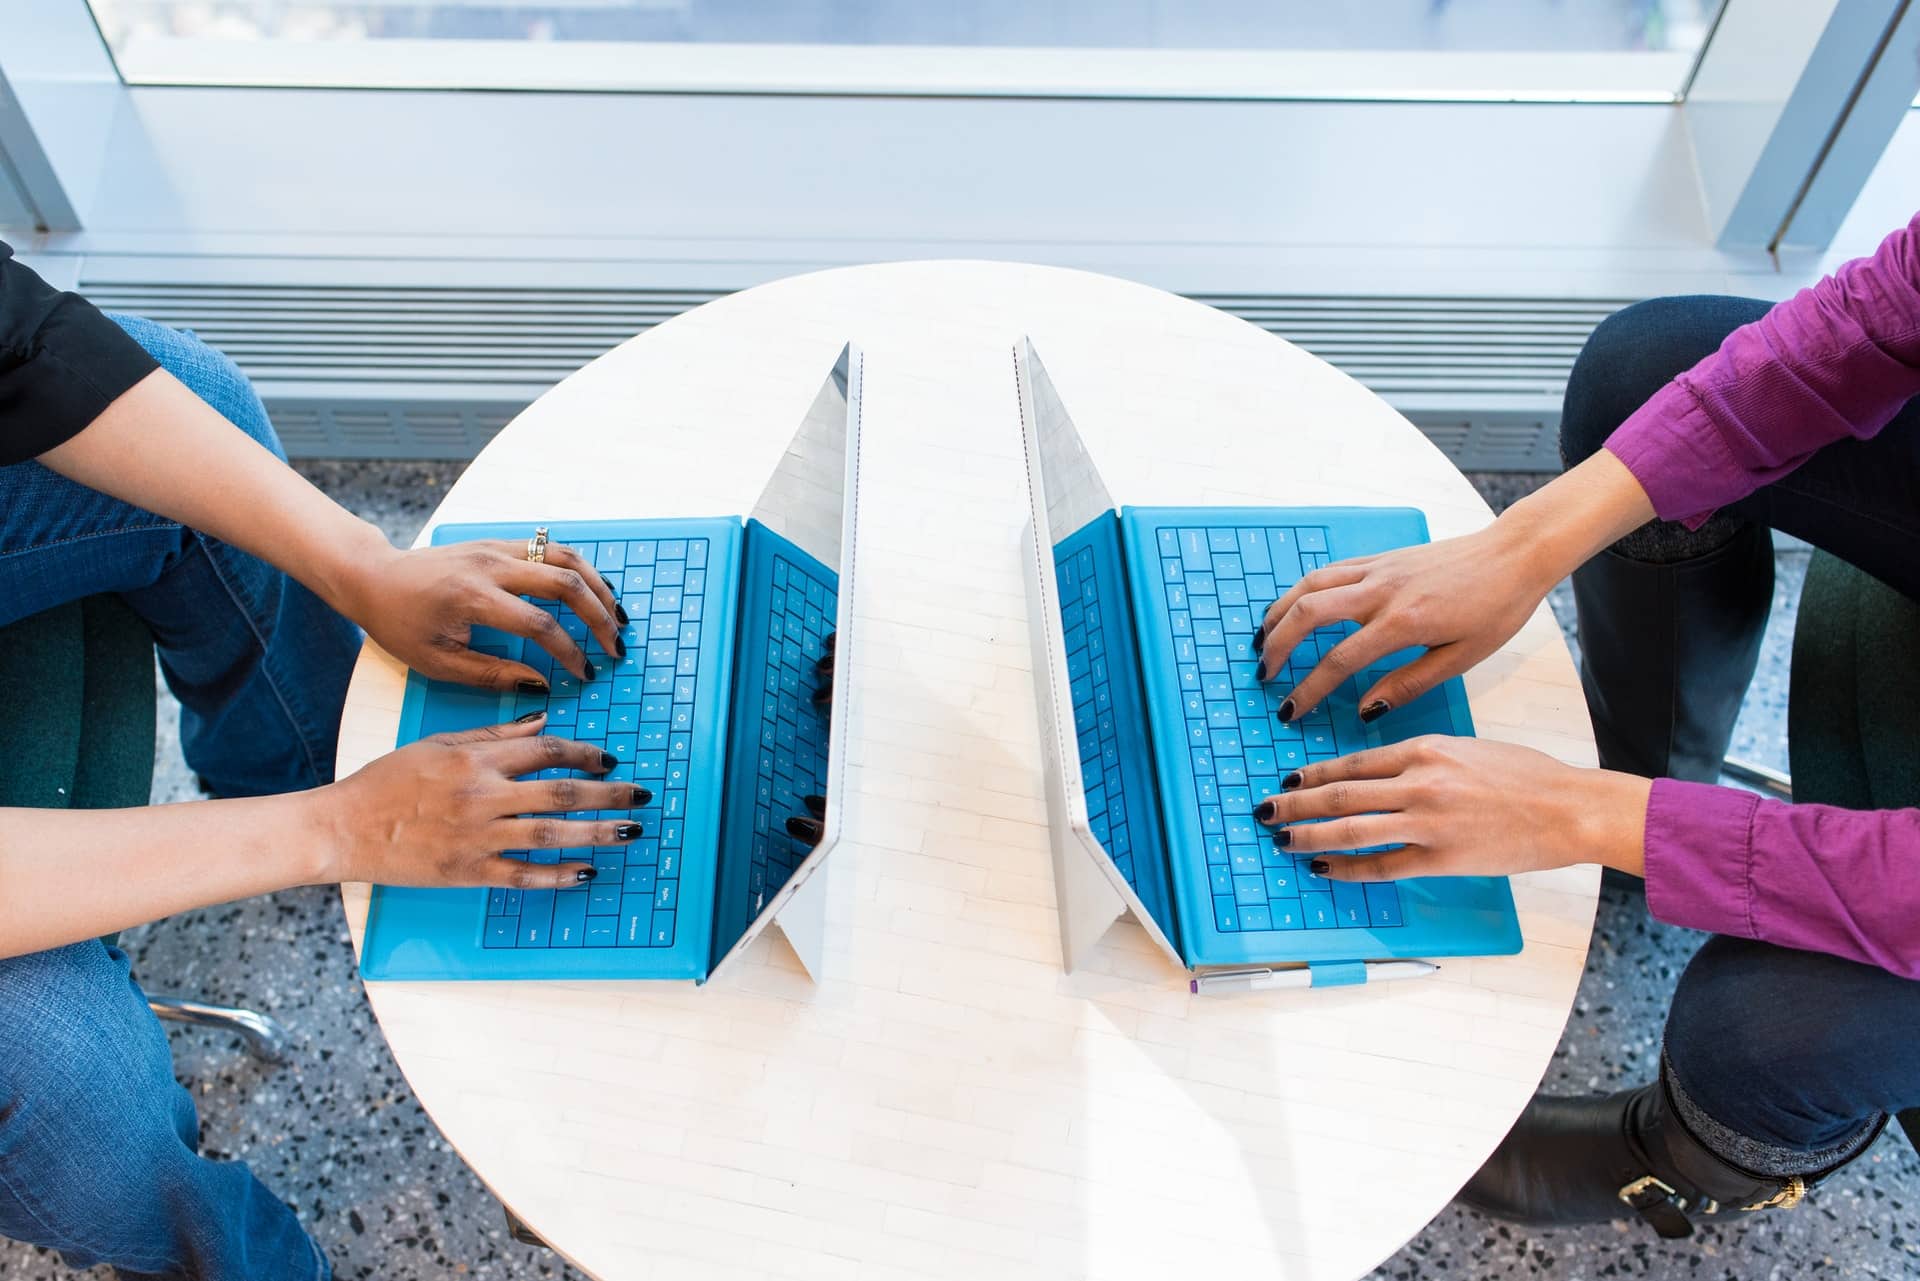 deux personnes face à face sur des ordinateurs portables bleus